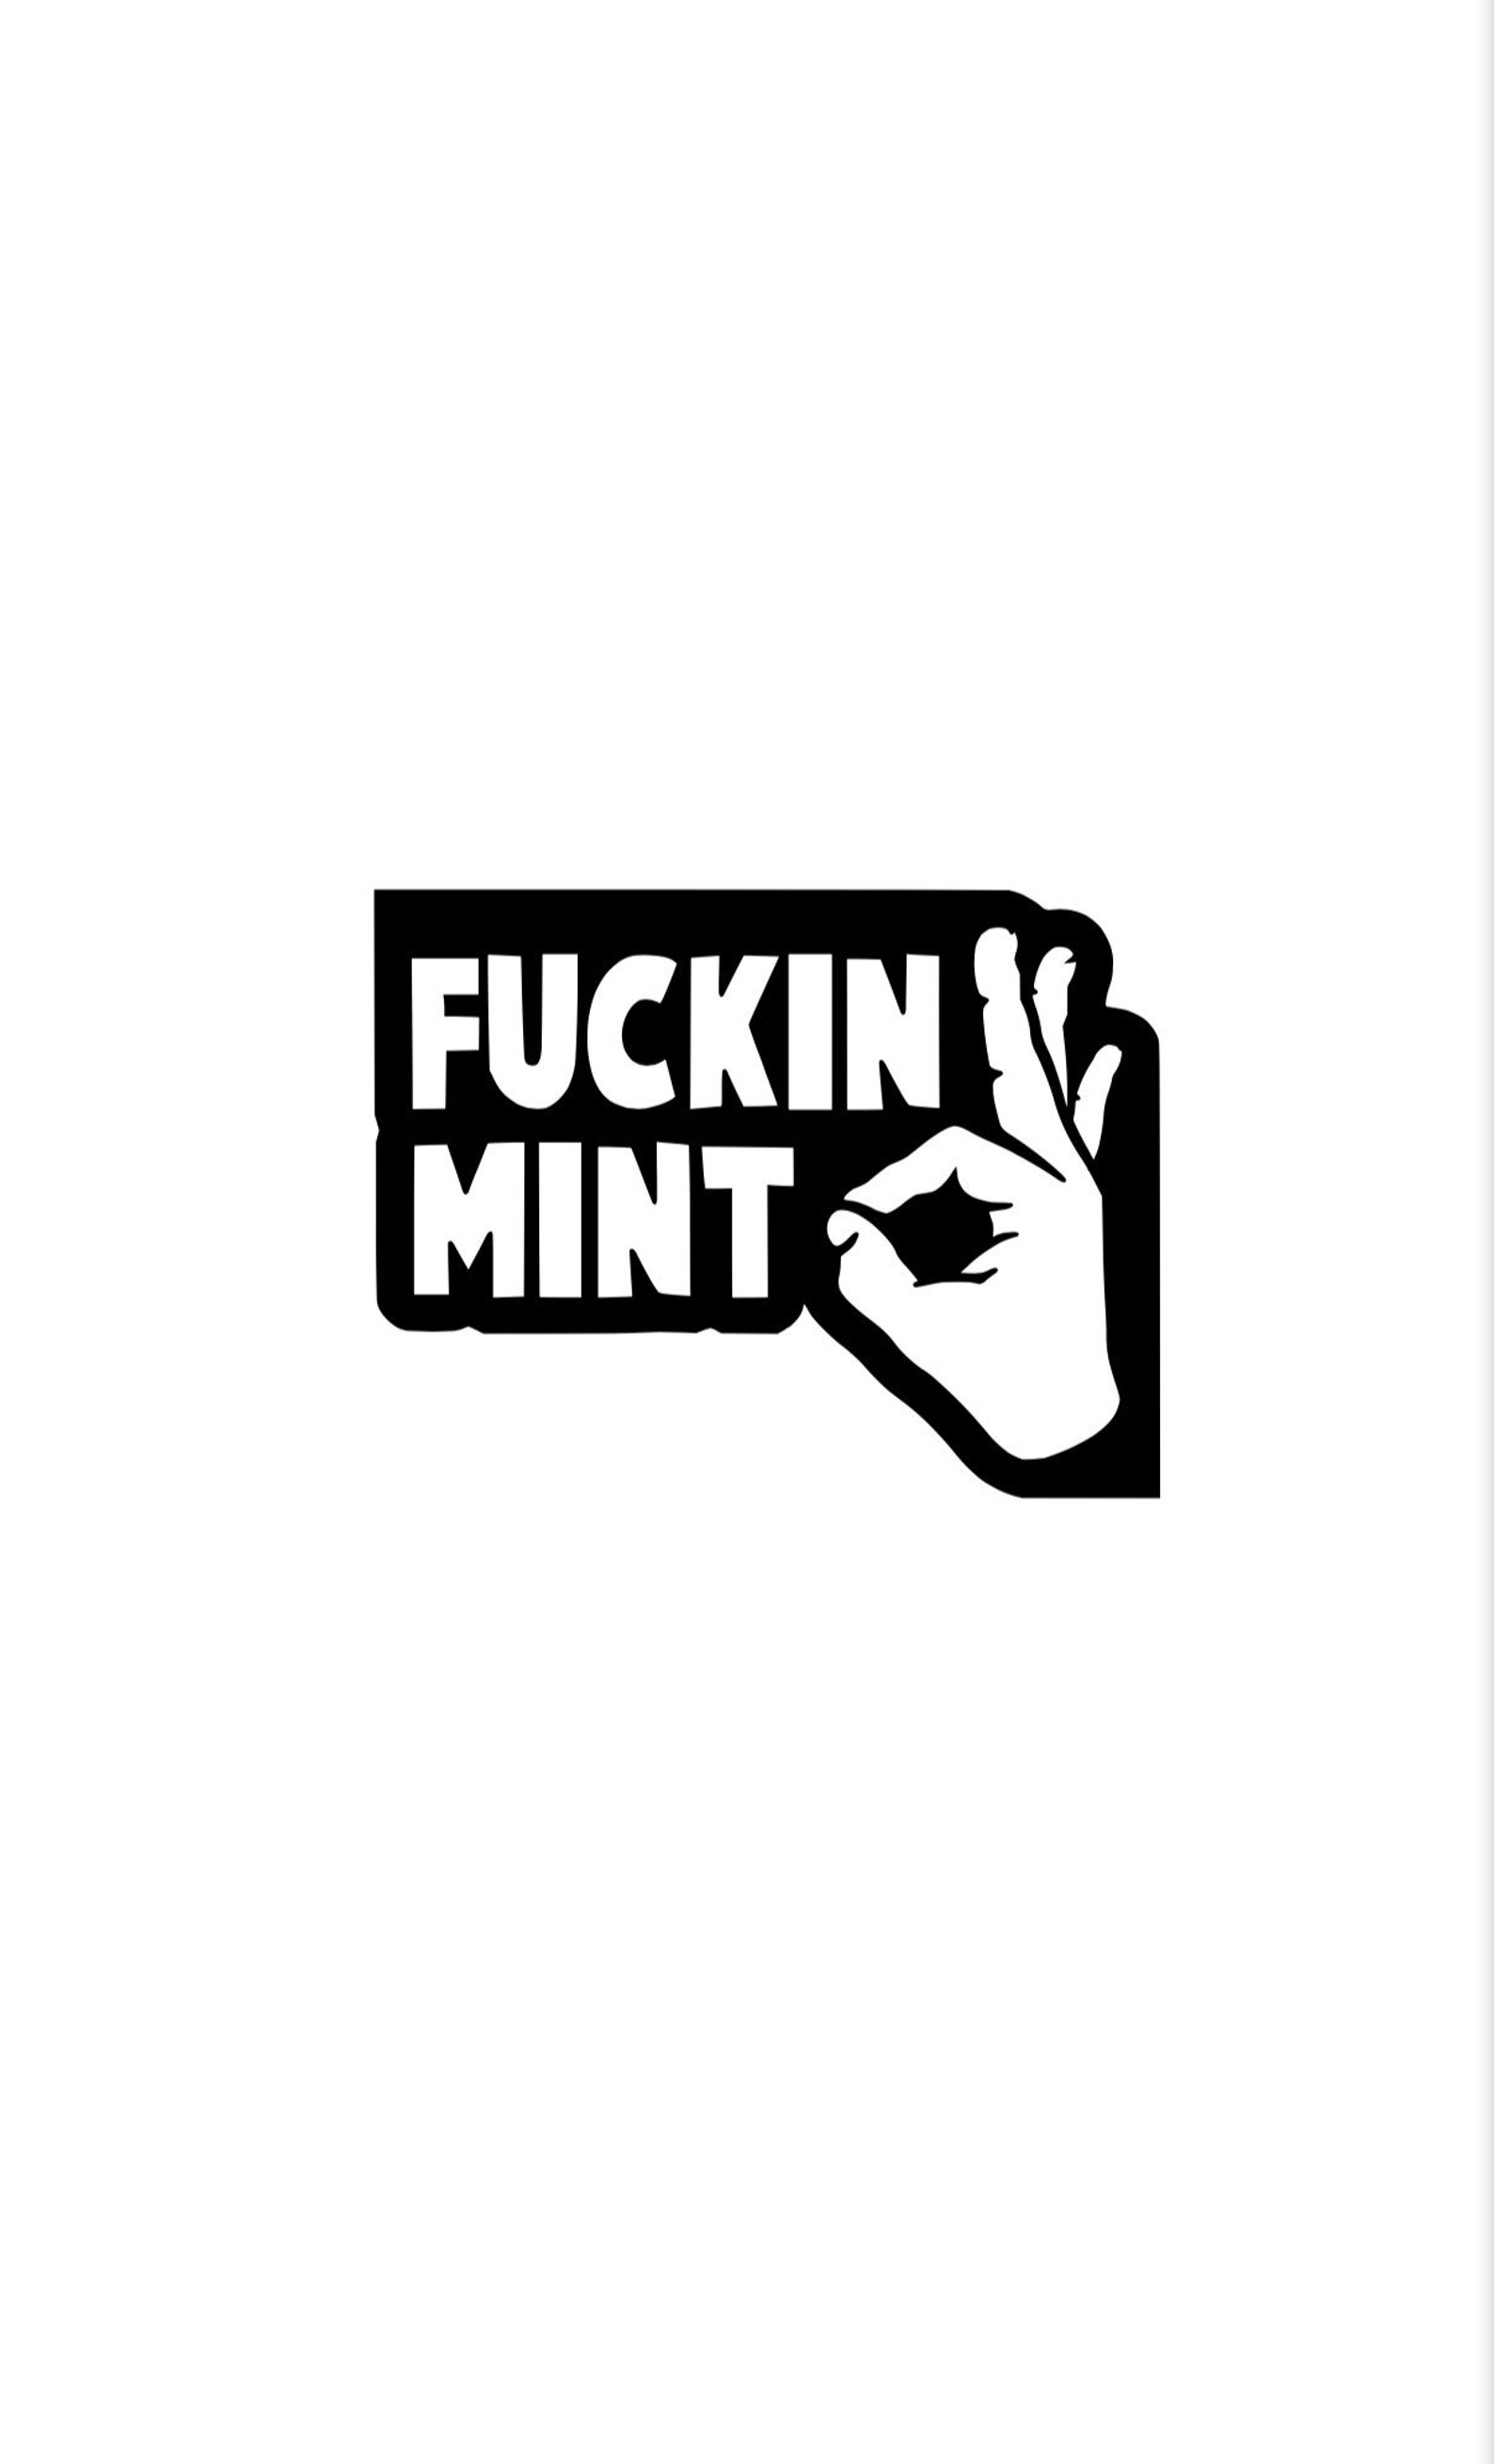 Fuckin Mint Bumper Sticker Vinyl Decal Window Sticker Etsy